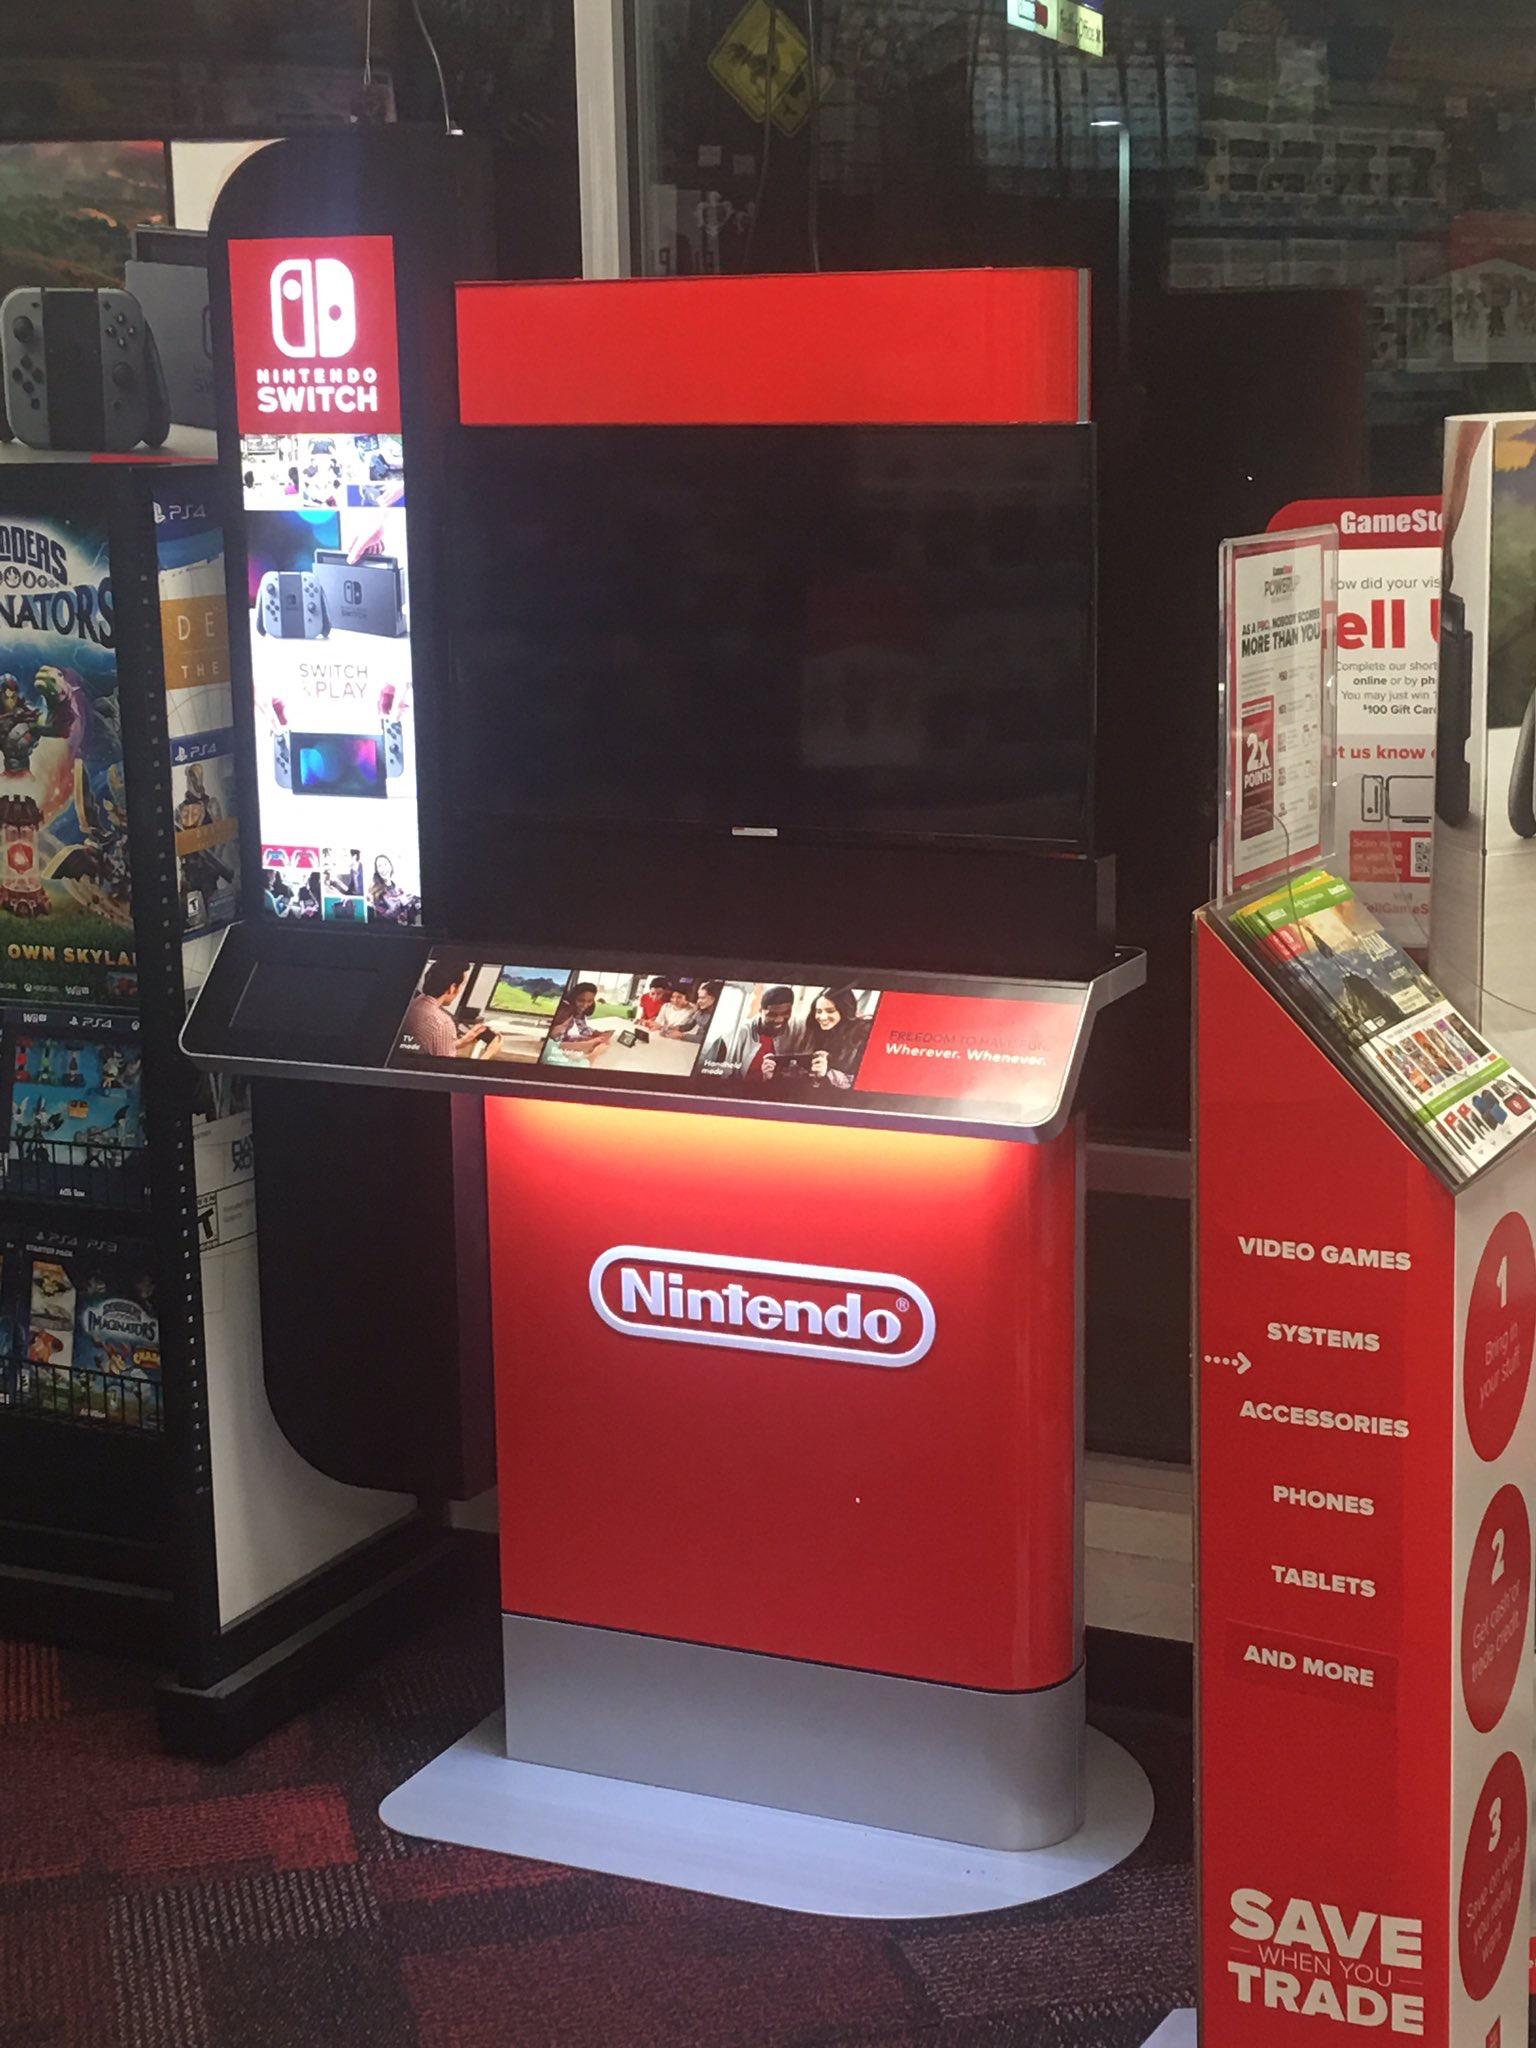 mesh Fantastisk Arrangement Switch demo kiosks showing up at GameStop locations